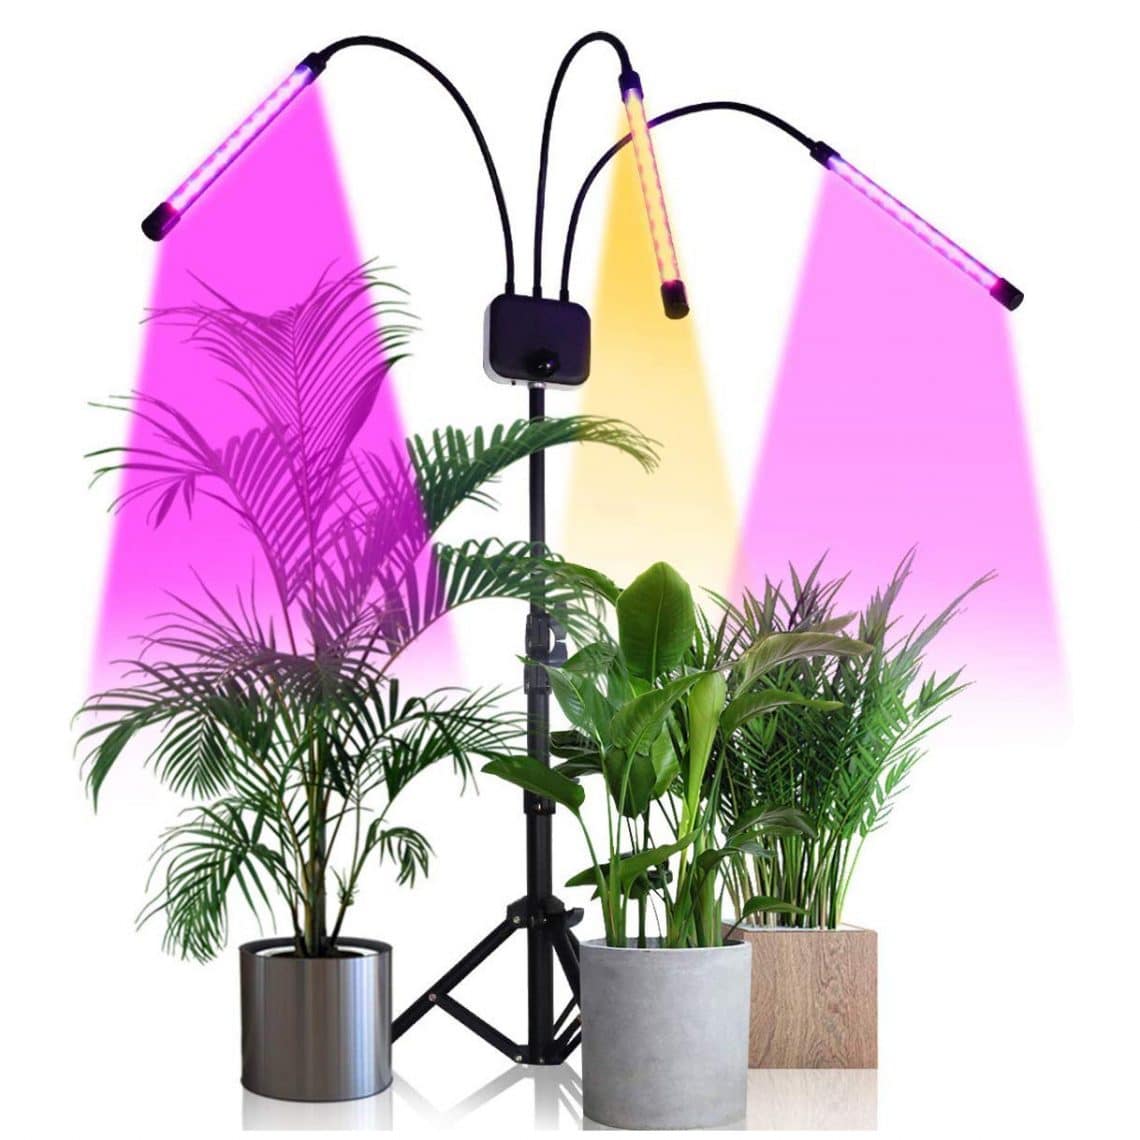 grow lights for indoor plants download free